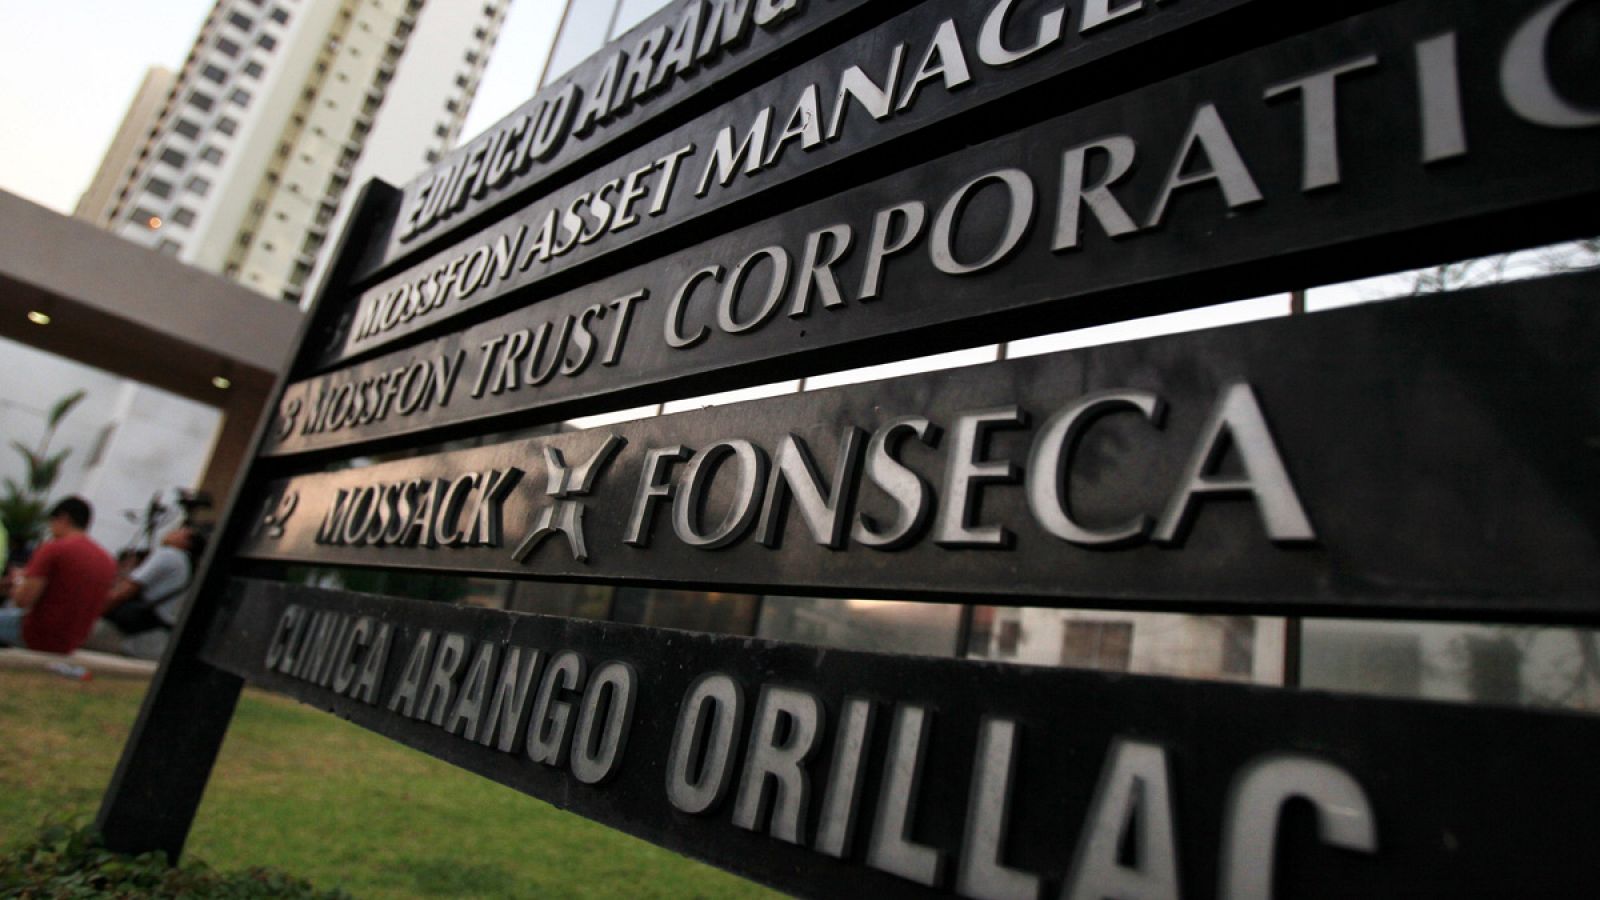 Vista general de la sede de la firma Mossack Fonseca en Ciudad de Panamá